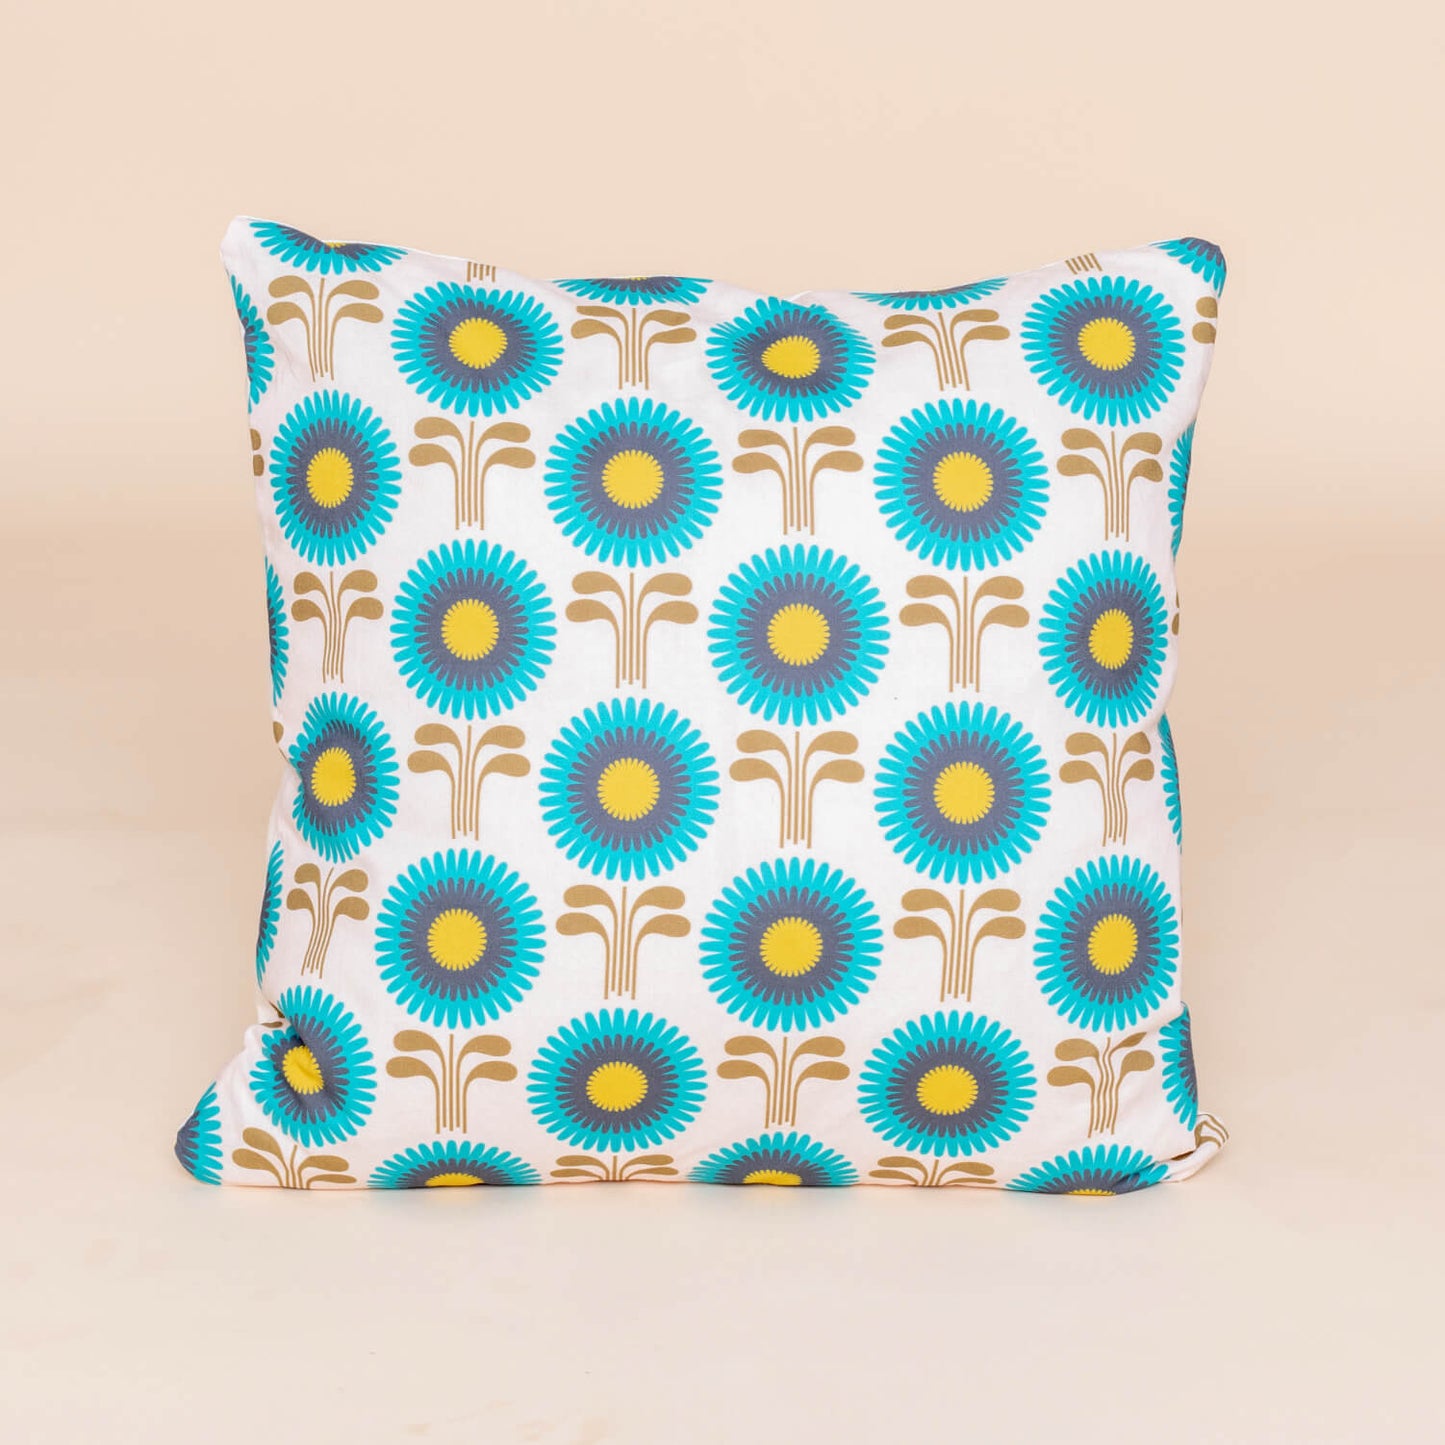 Kate Rhees Retro Zinnias 18x18” Cushion Cover